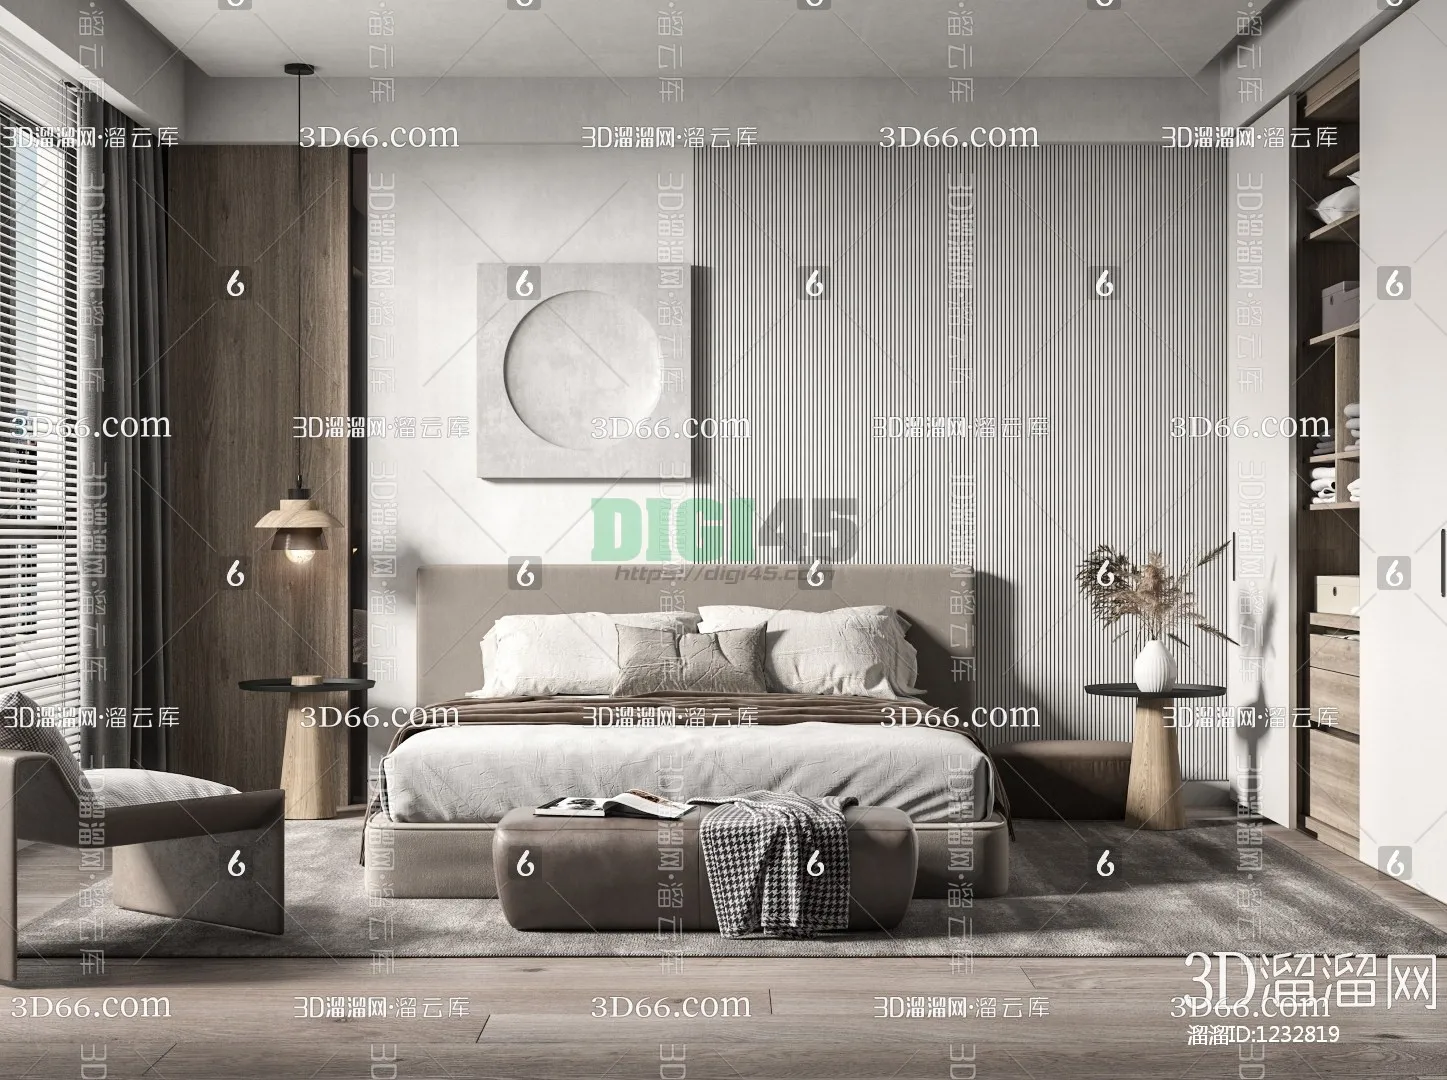 Bedroom 3D Scenes – 1123